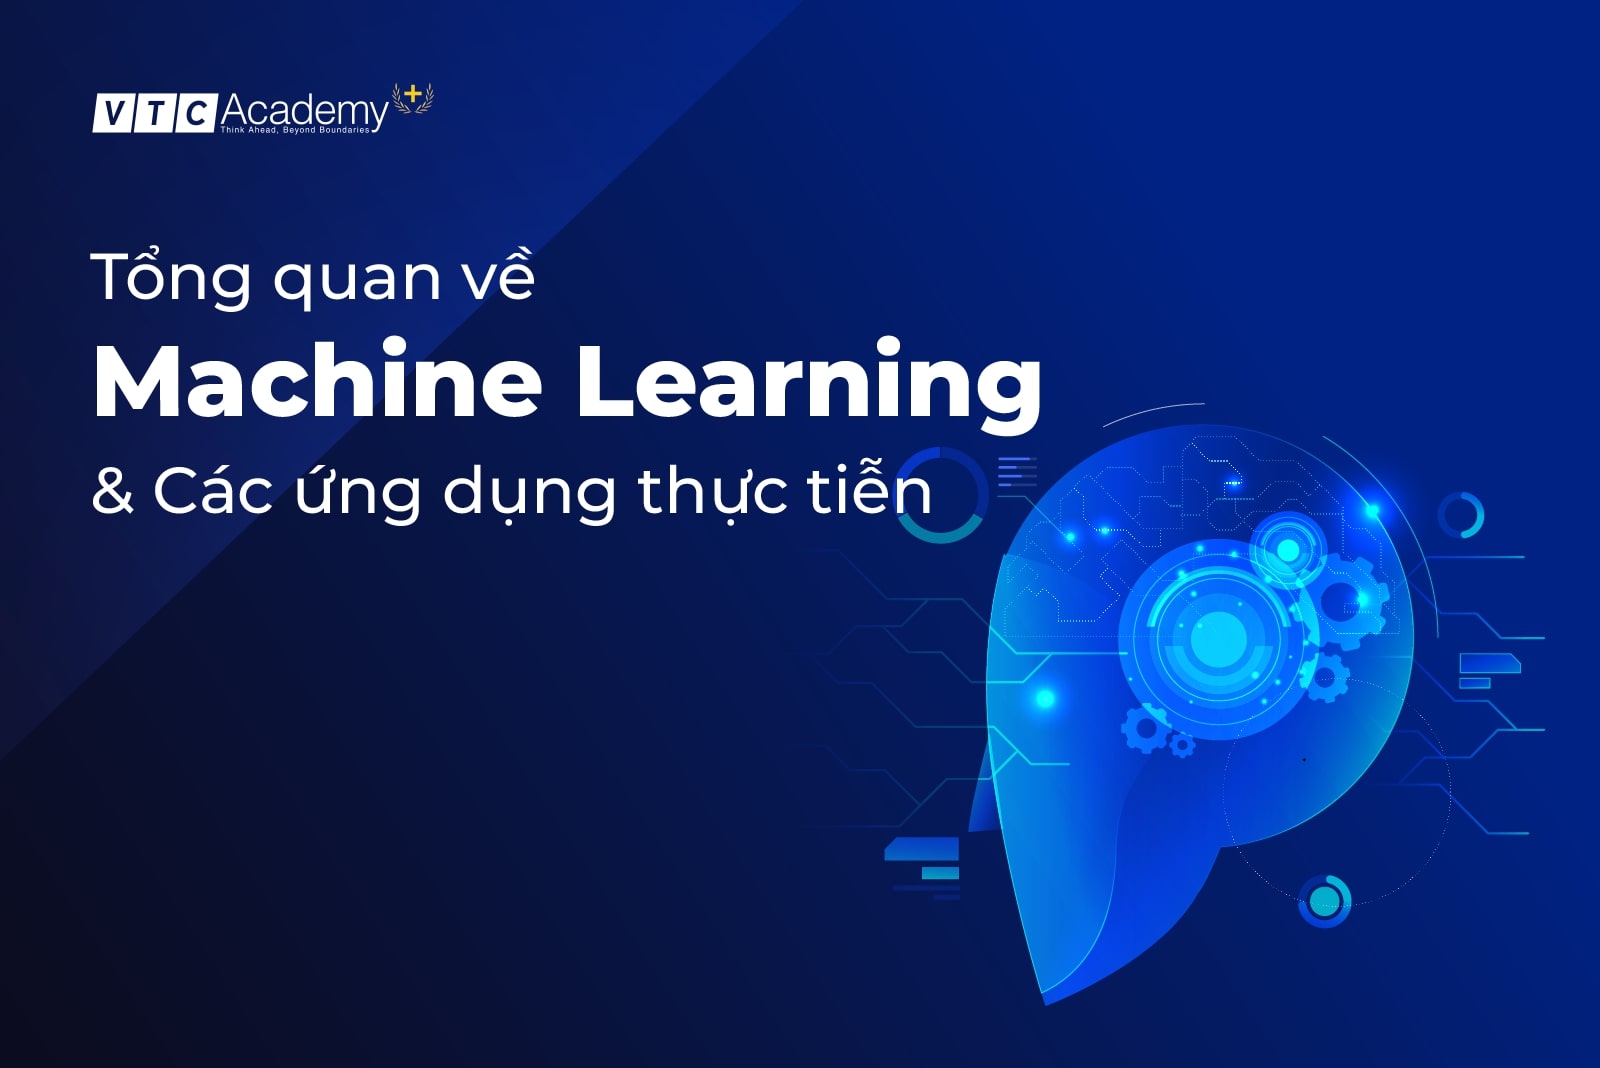 Machine Learning là gì? Các ứng dụng thực tiễn của học máy